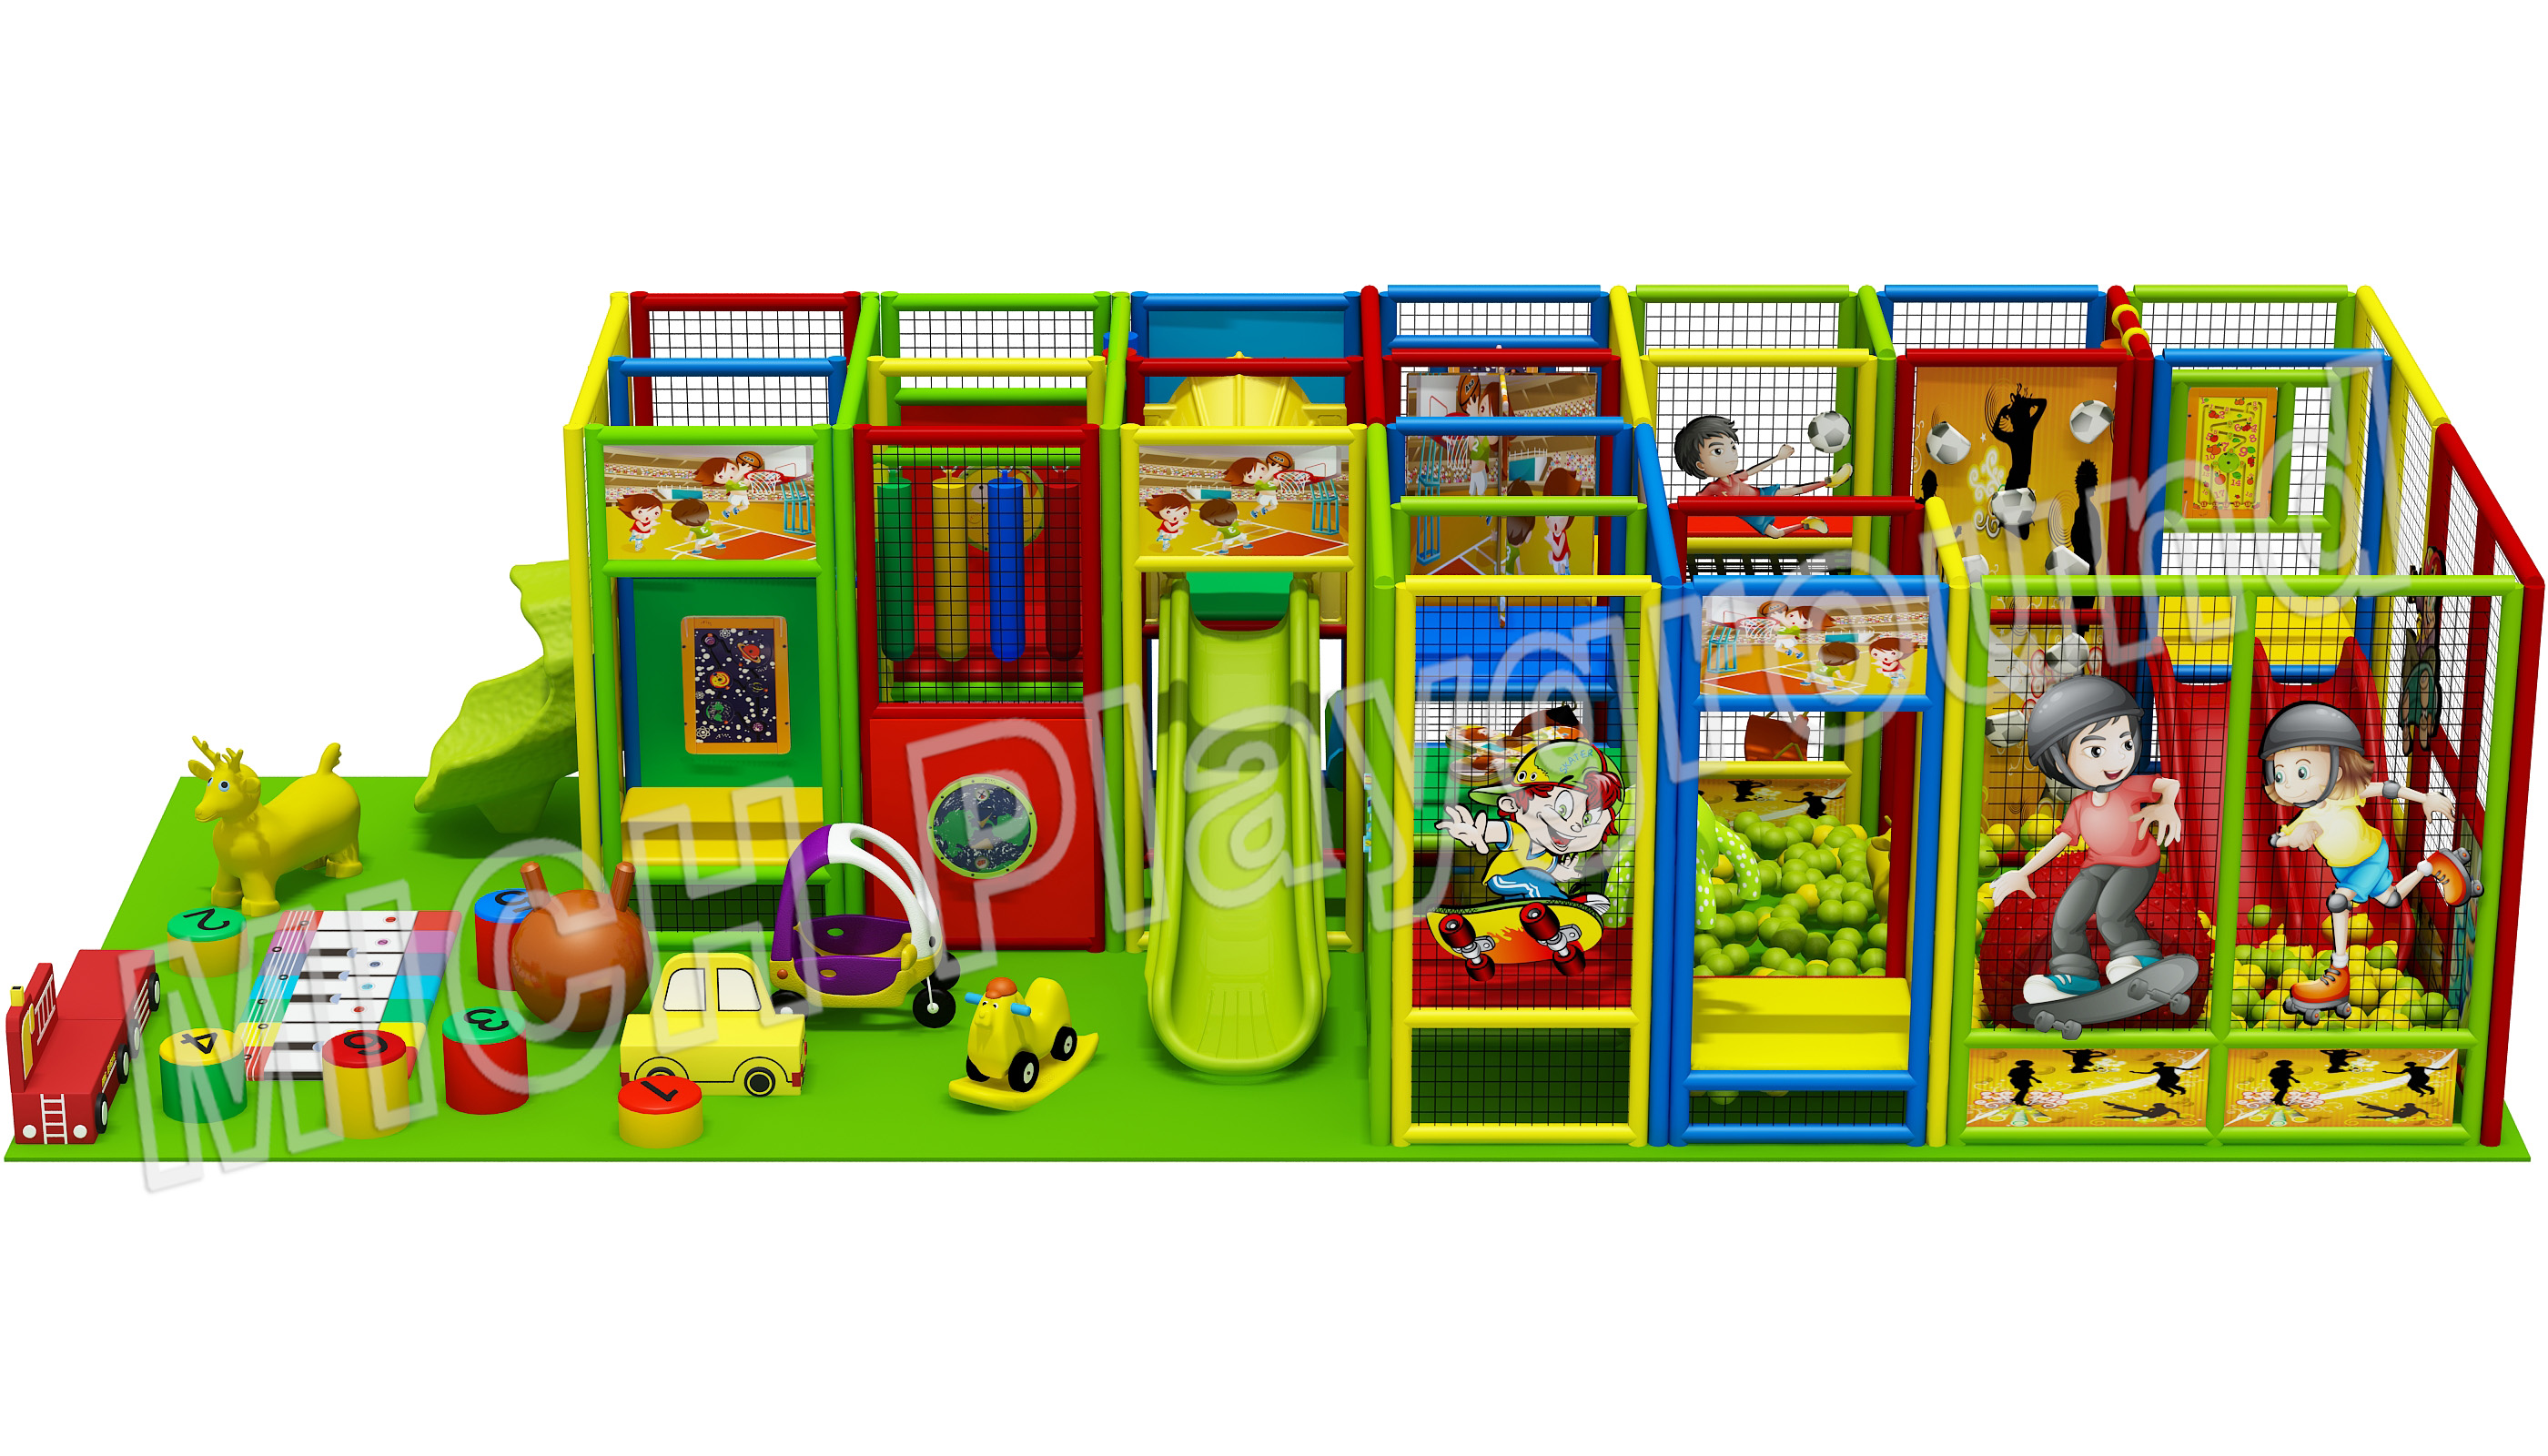 Hot Sale Indoor Amusement Soft Playground for Children 6609B